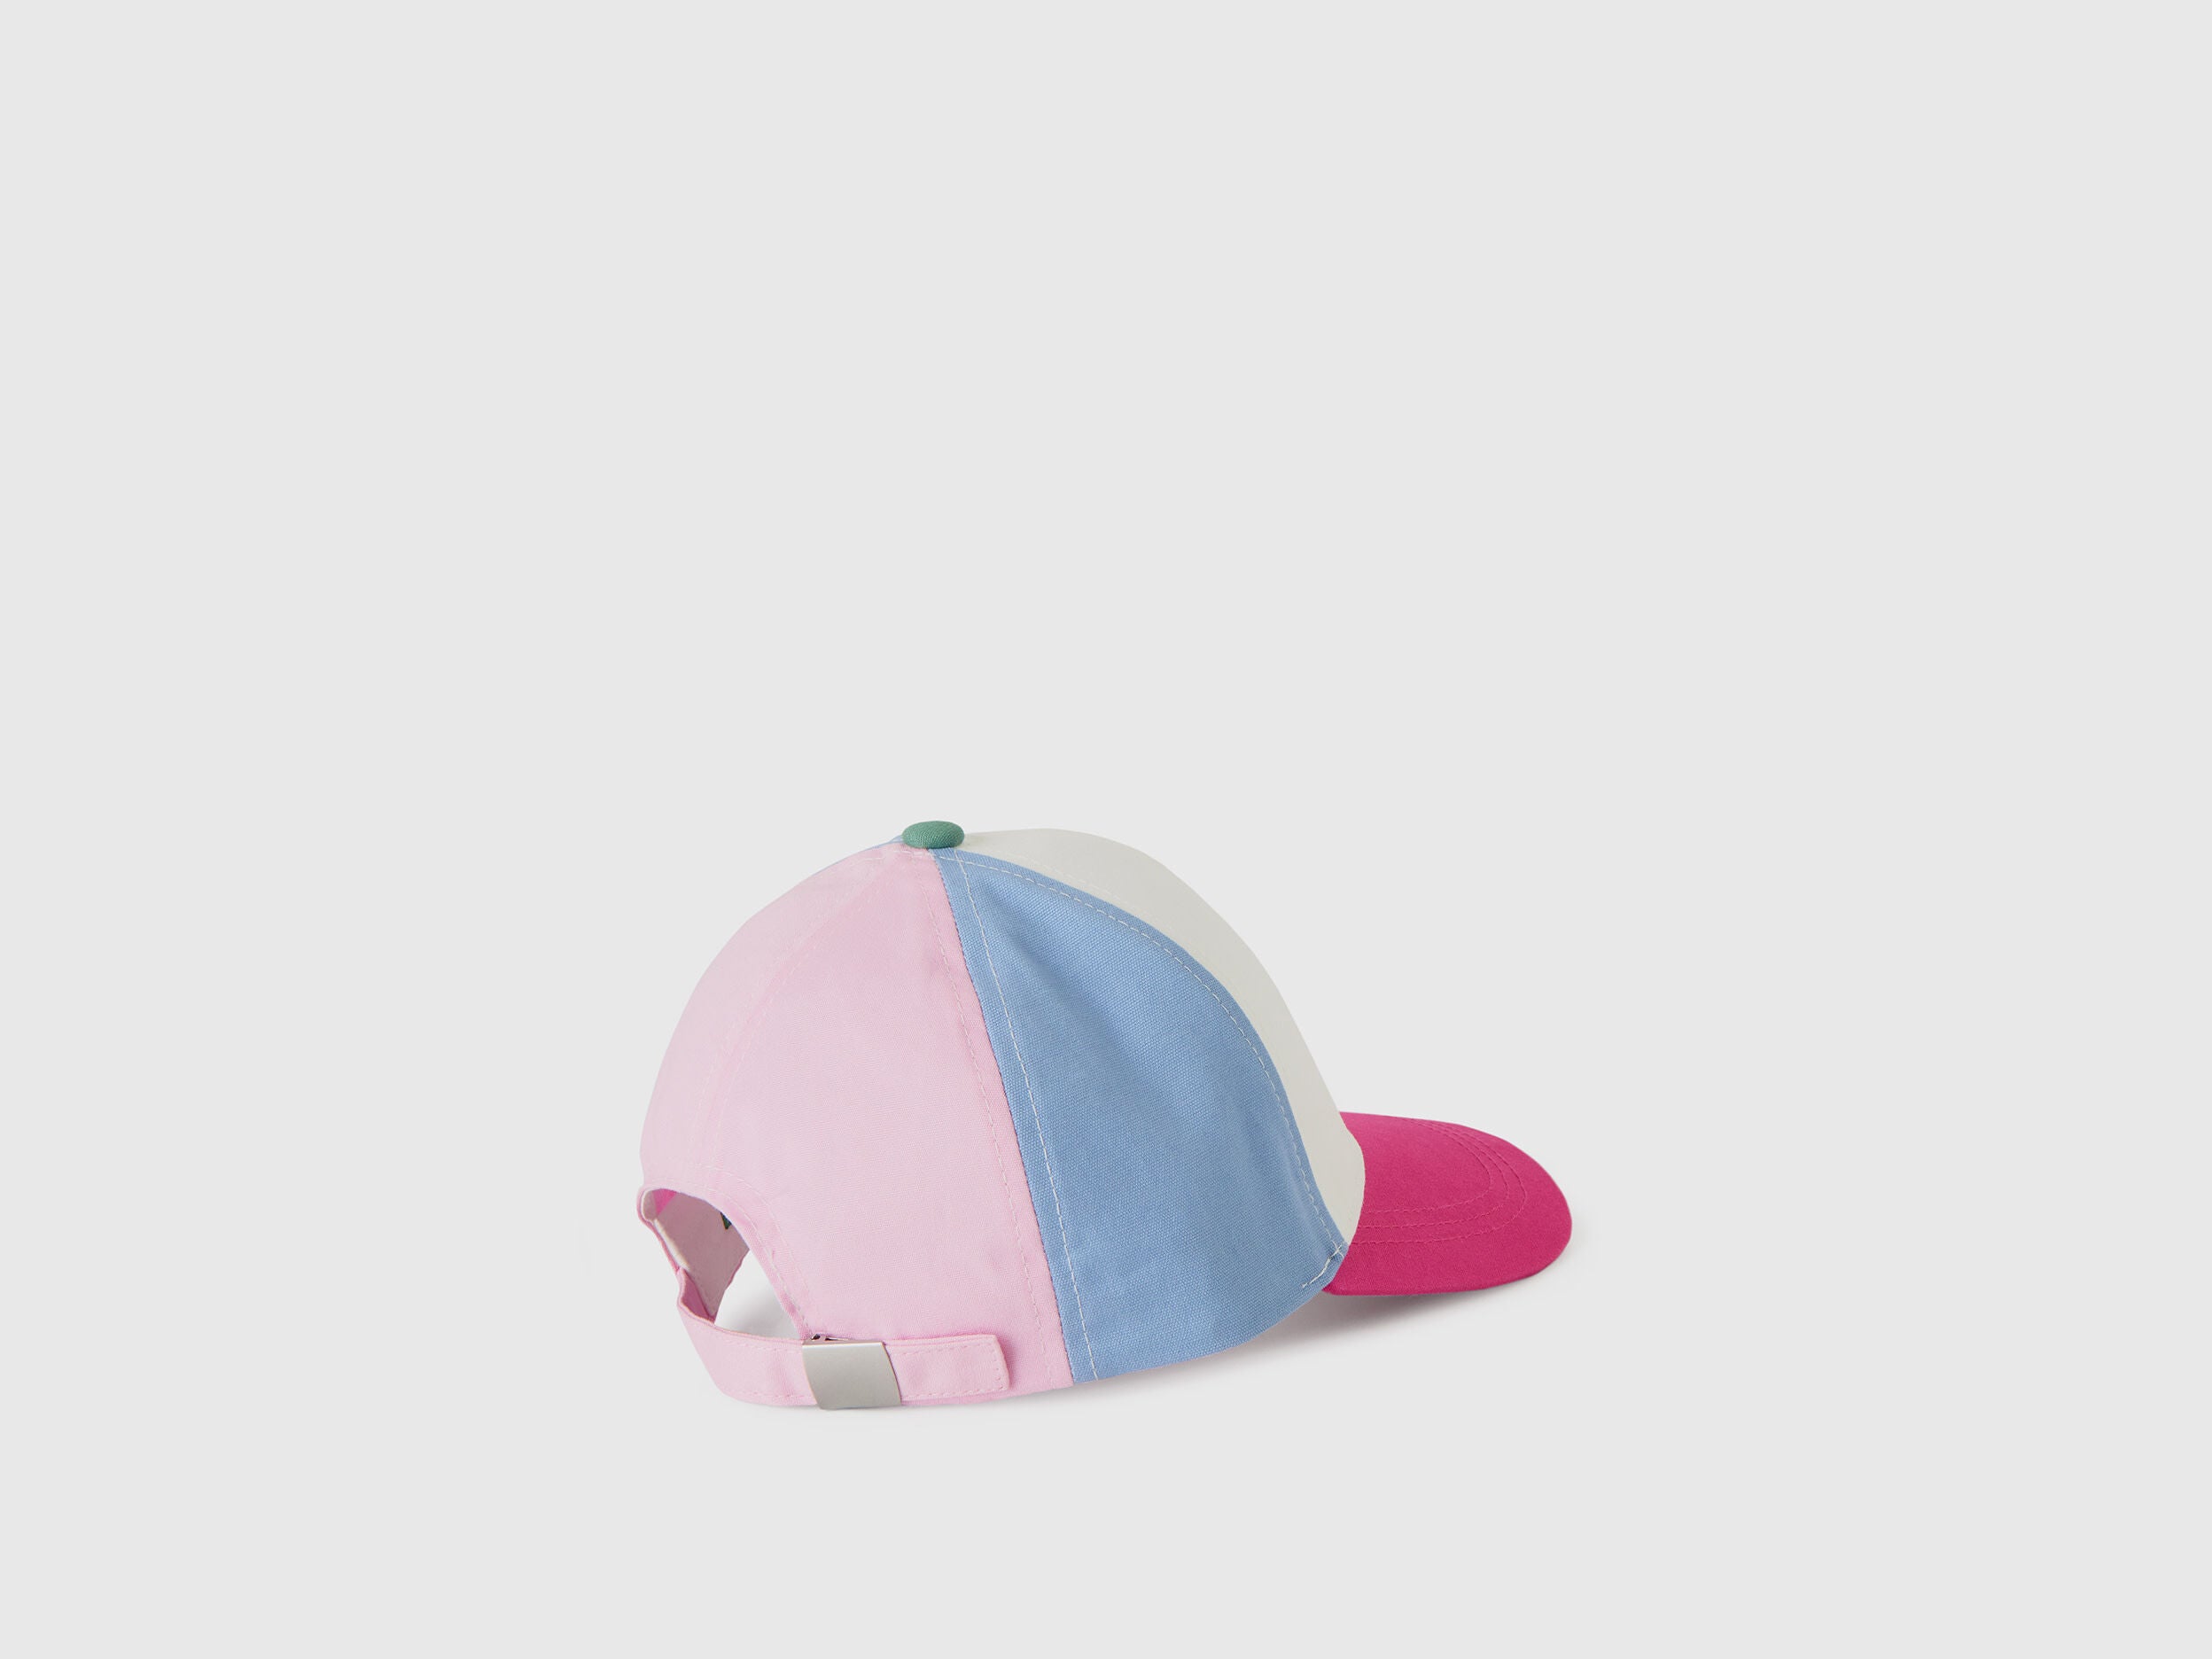 Cotton Hat With Brim - 02